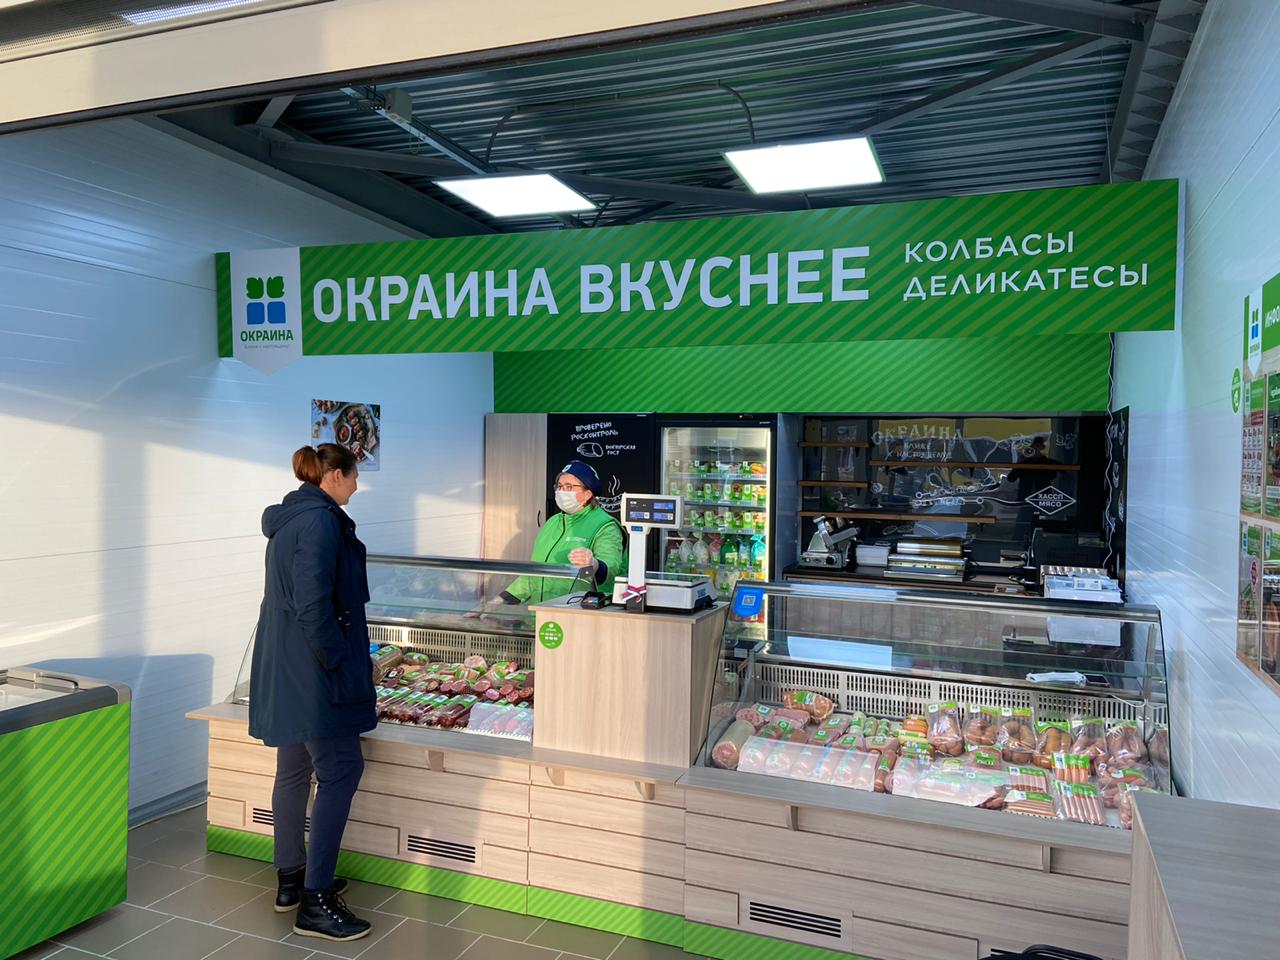 Опыт колбасного магазина «Окраина вкуснее» по управлению ассортиментом